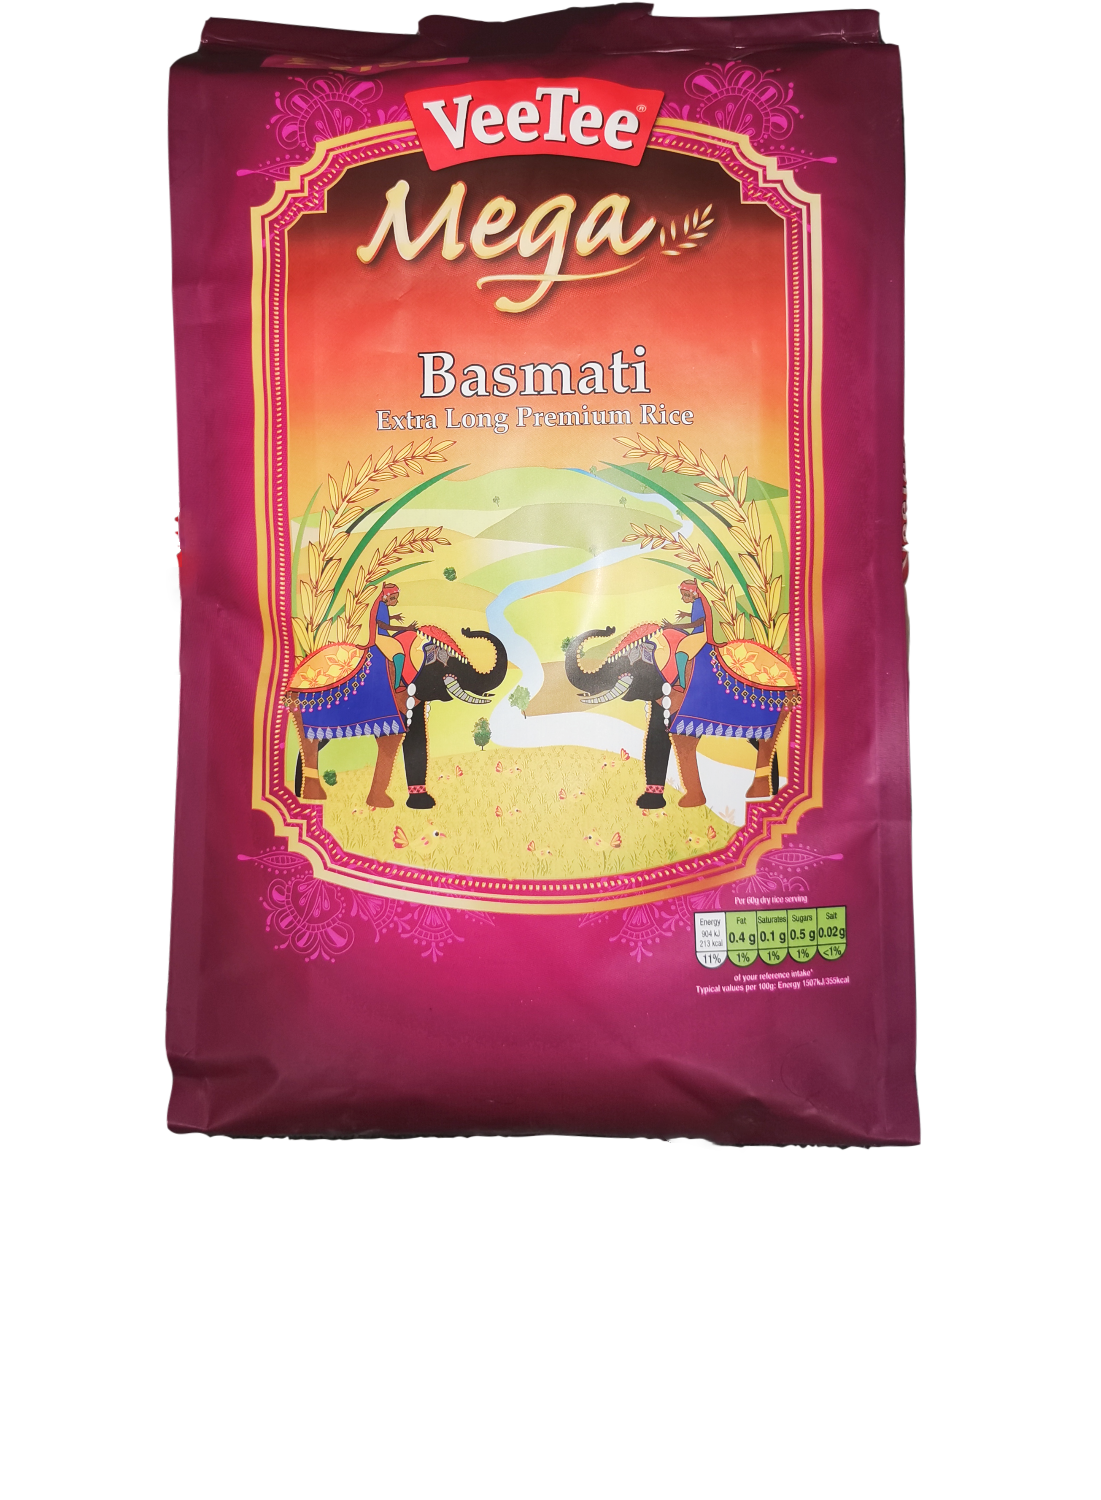 Veetee Mega Basmati Extra Long Premium Rice